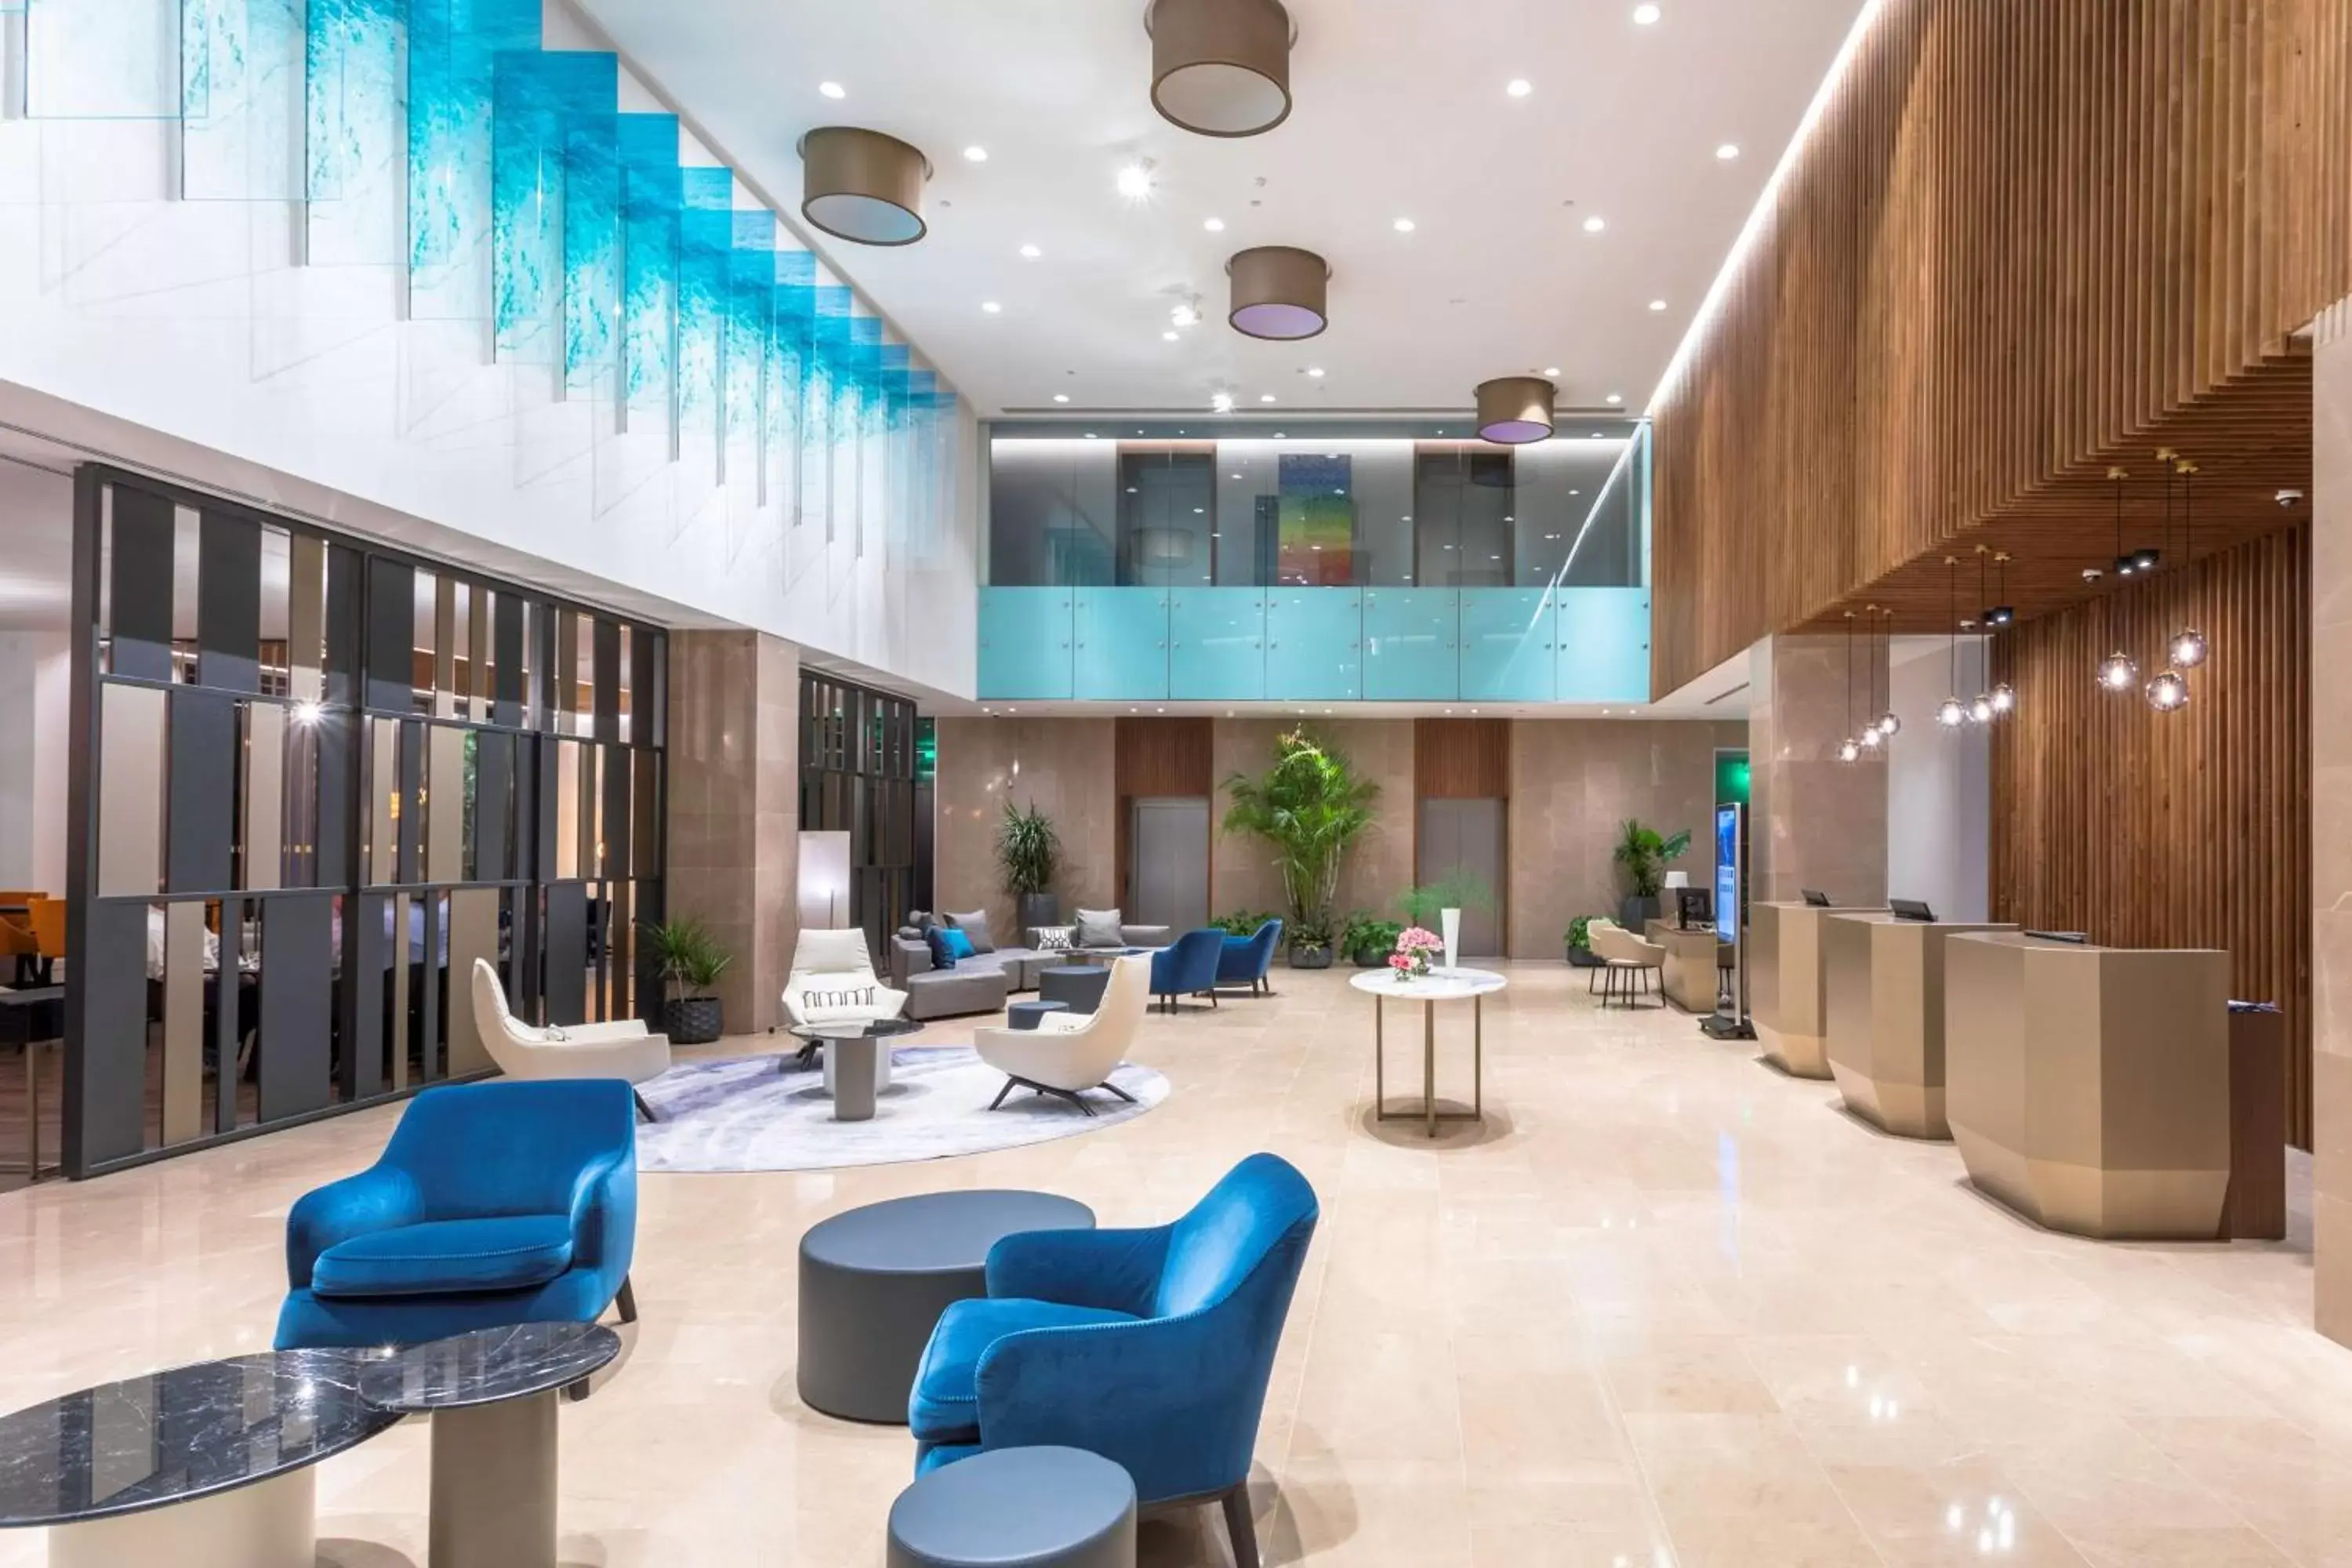 Lobby or reception, Lobby/Reception in Radisson Blu Hotel, Larnaca